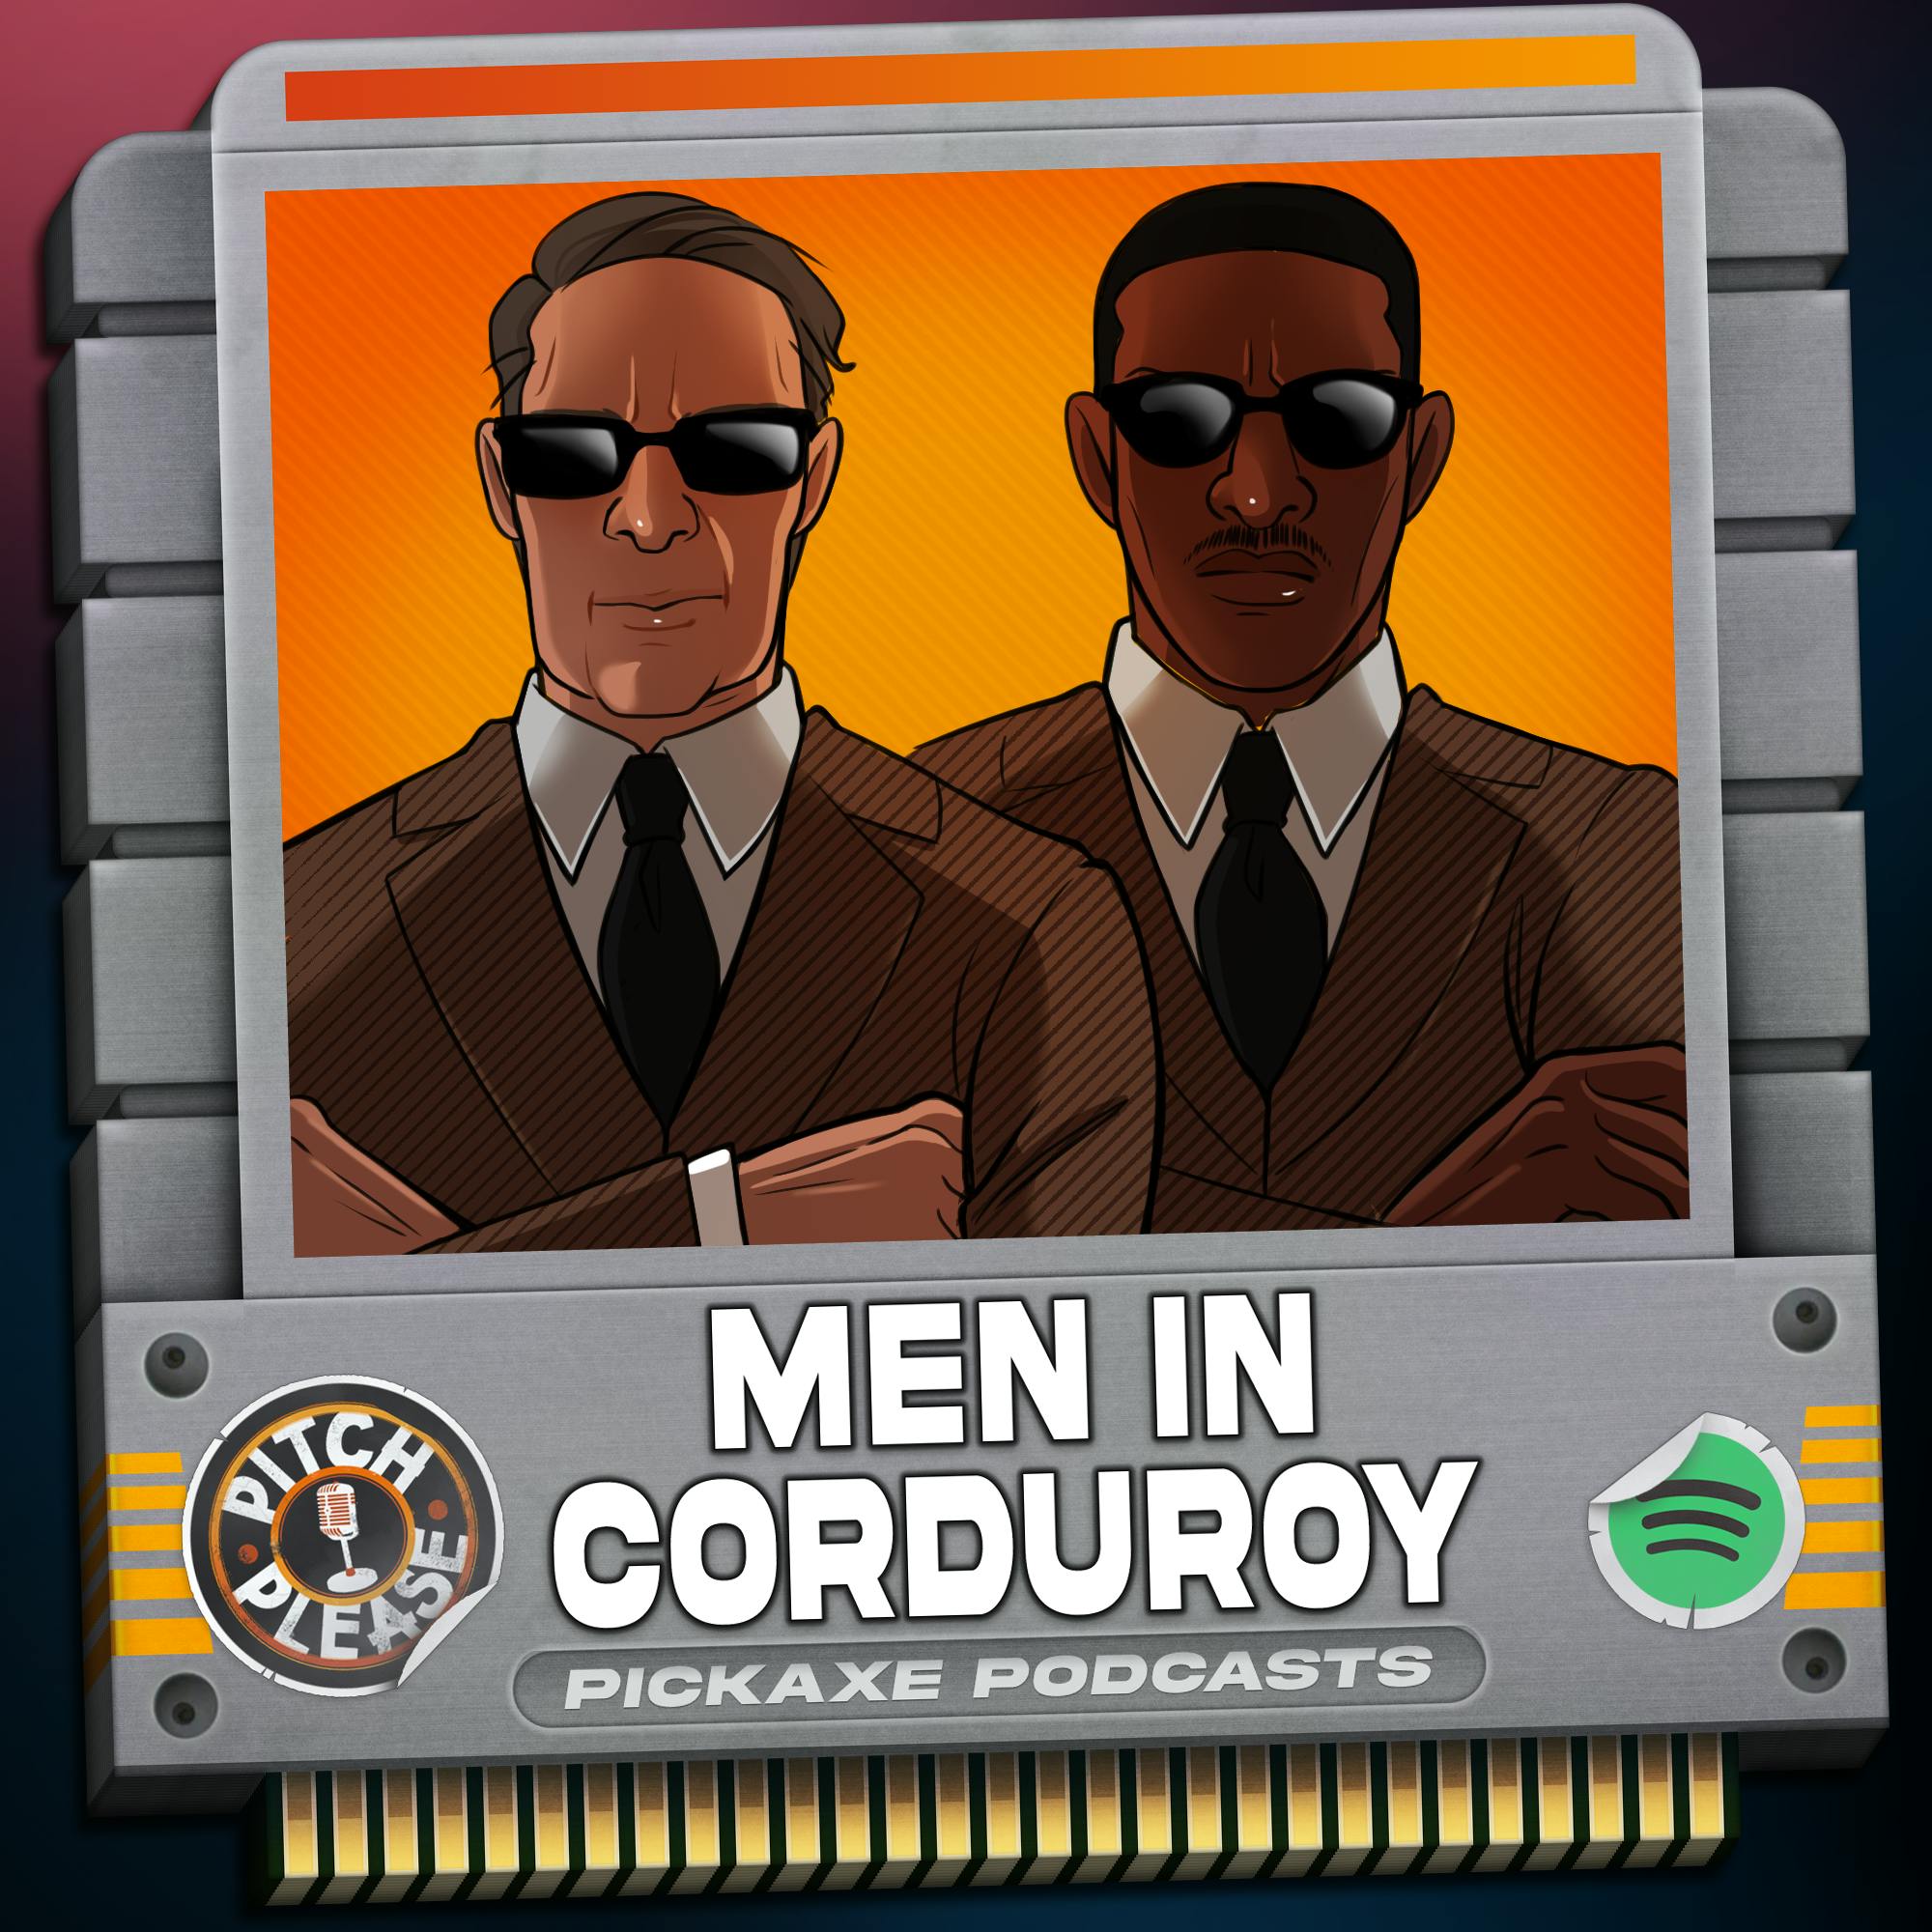 Pitch, Please - Men in Corduroy